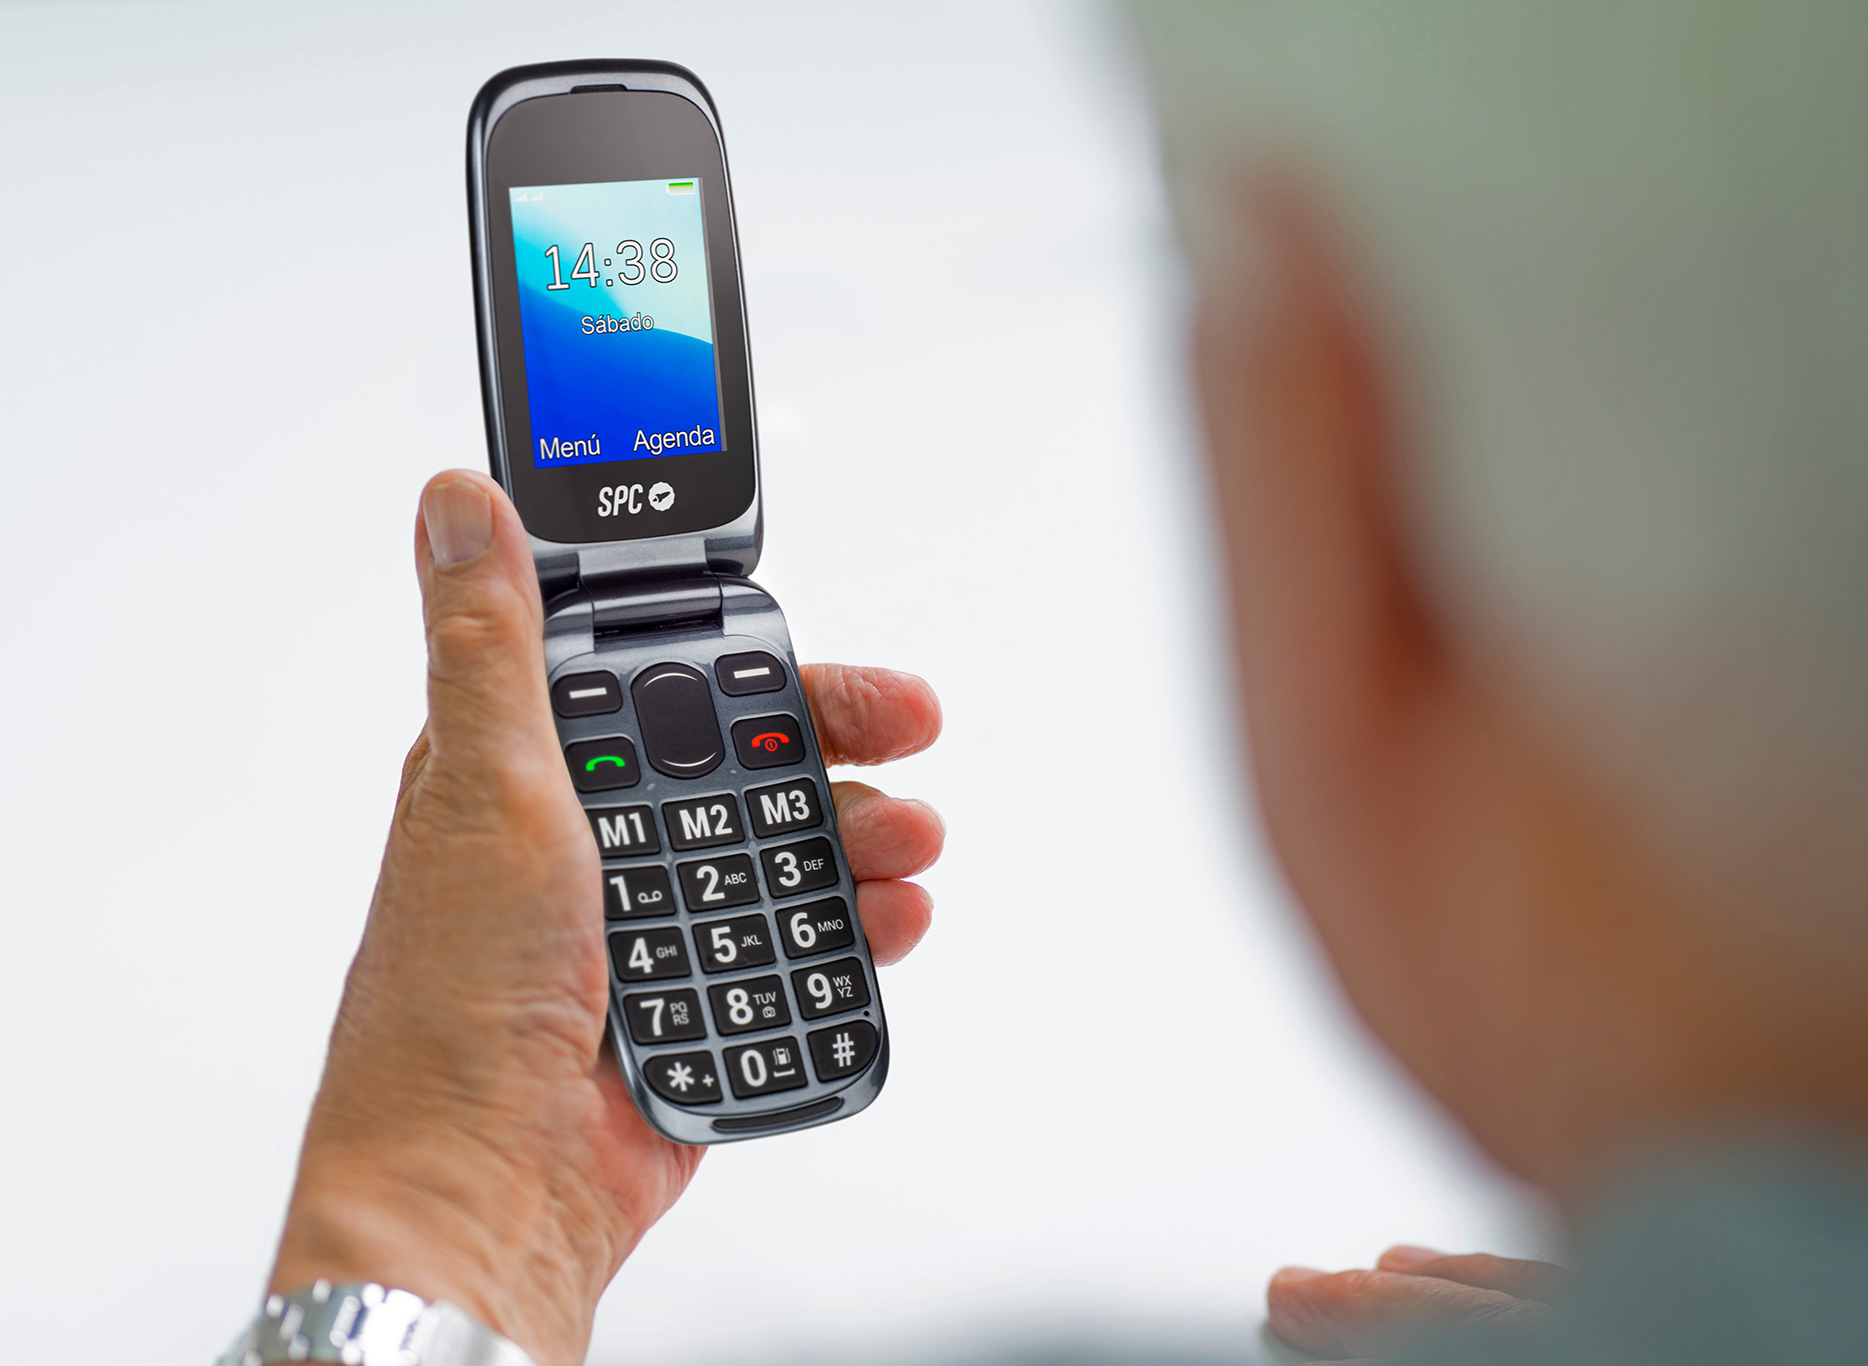 SPC incorpora las ventajas de la tecnología 4G a su senior phone más icónico y presenta HARMONY 4G: más cobertura, calidad de llamadas HD y compatible con audífonos